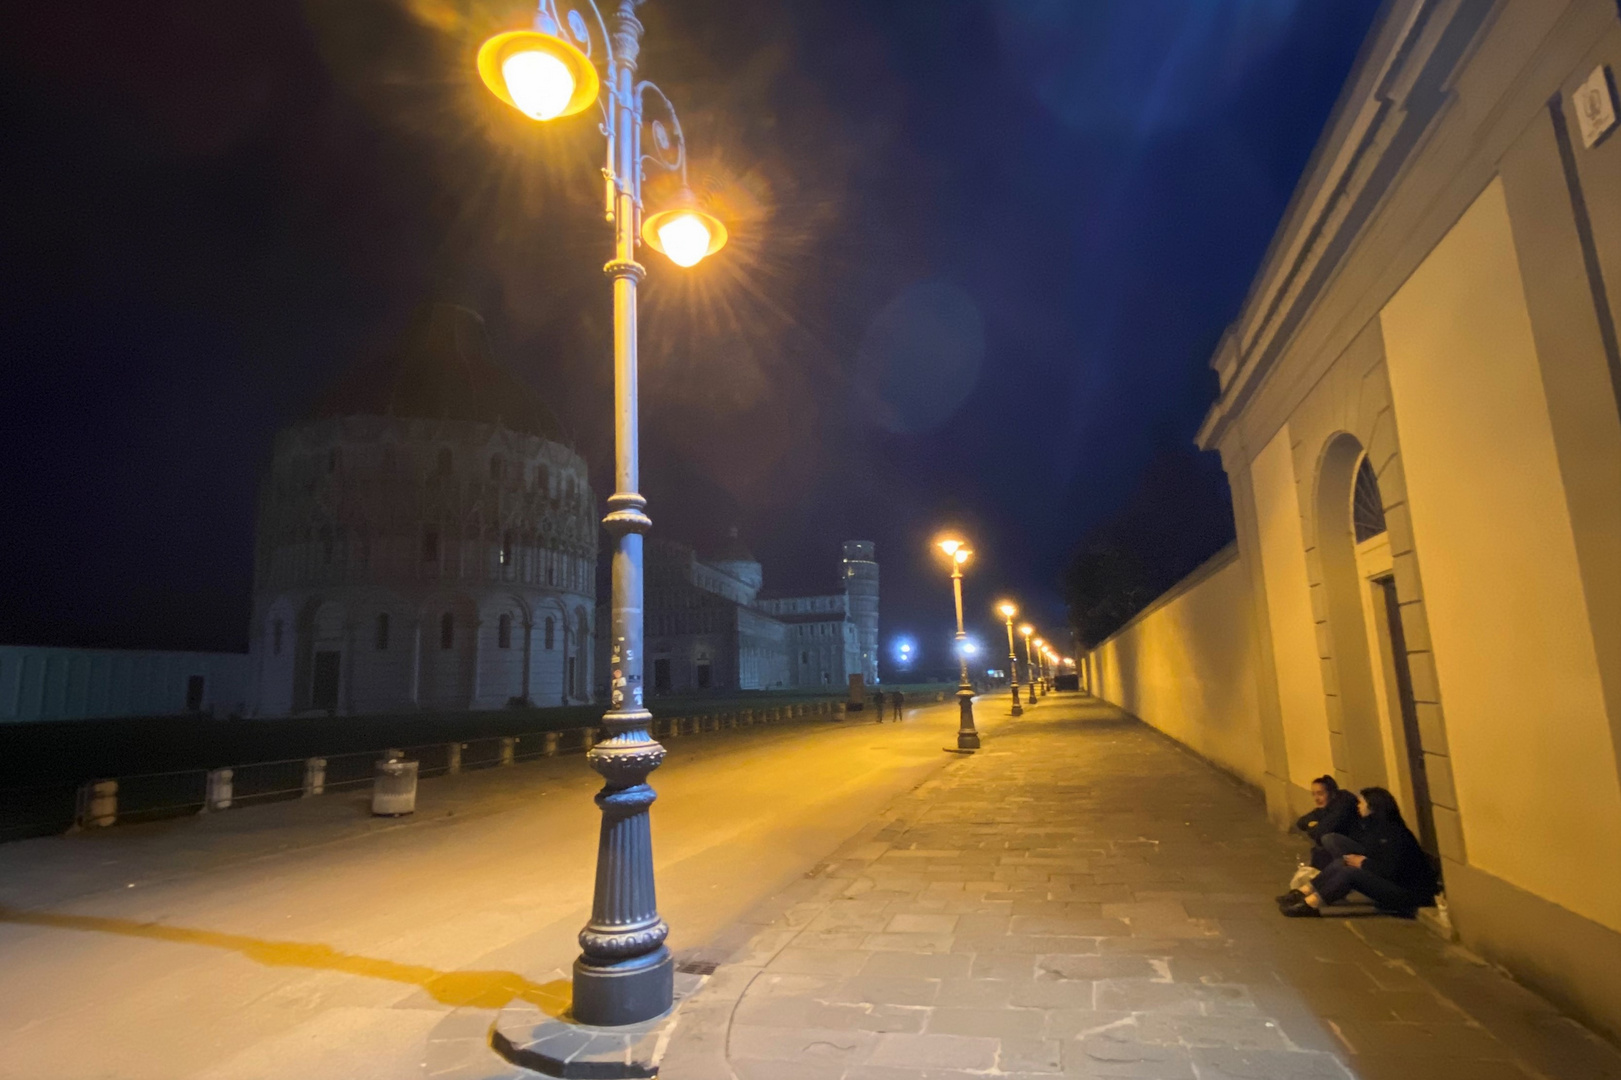 Pisa by night